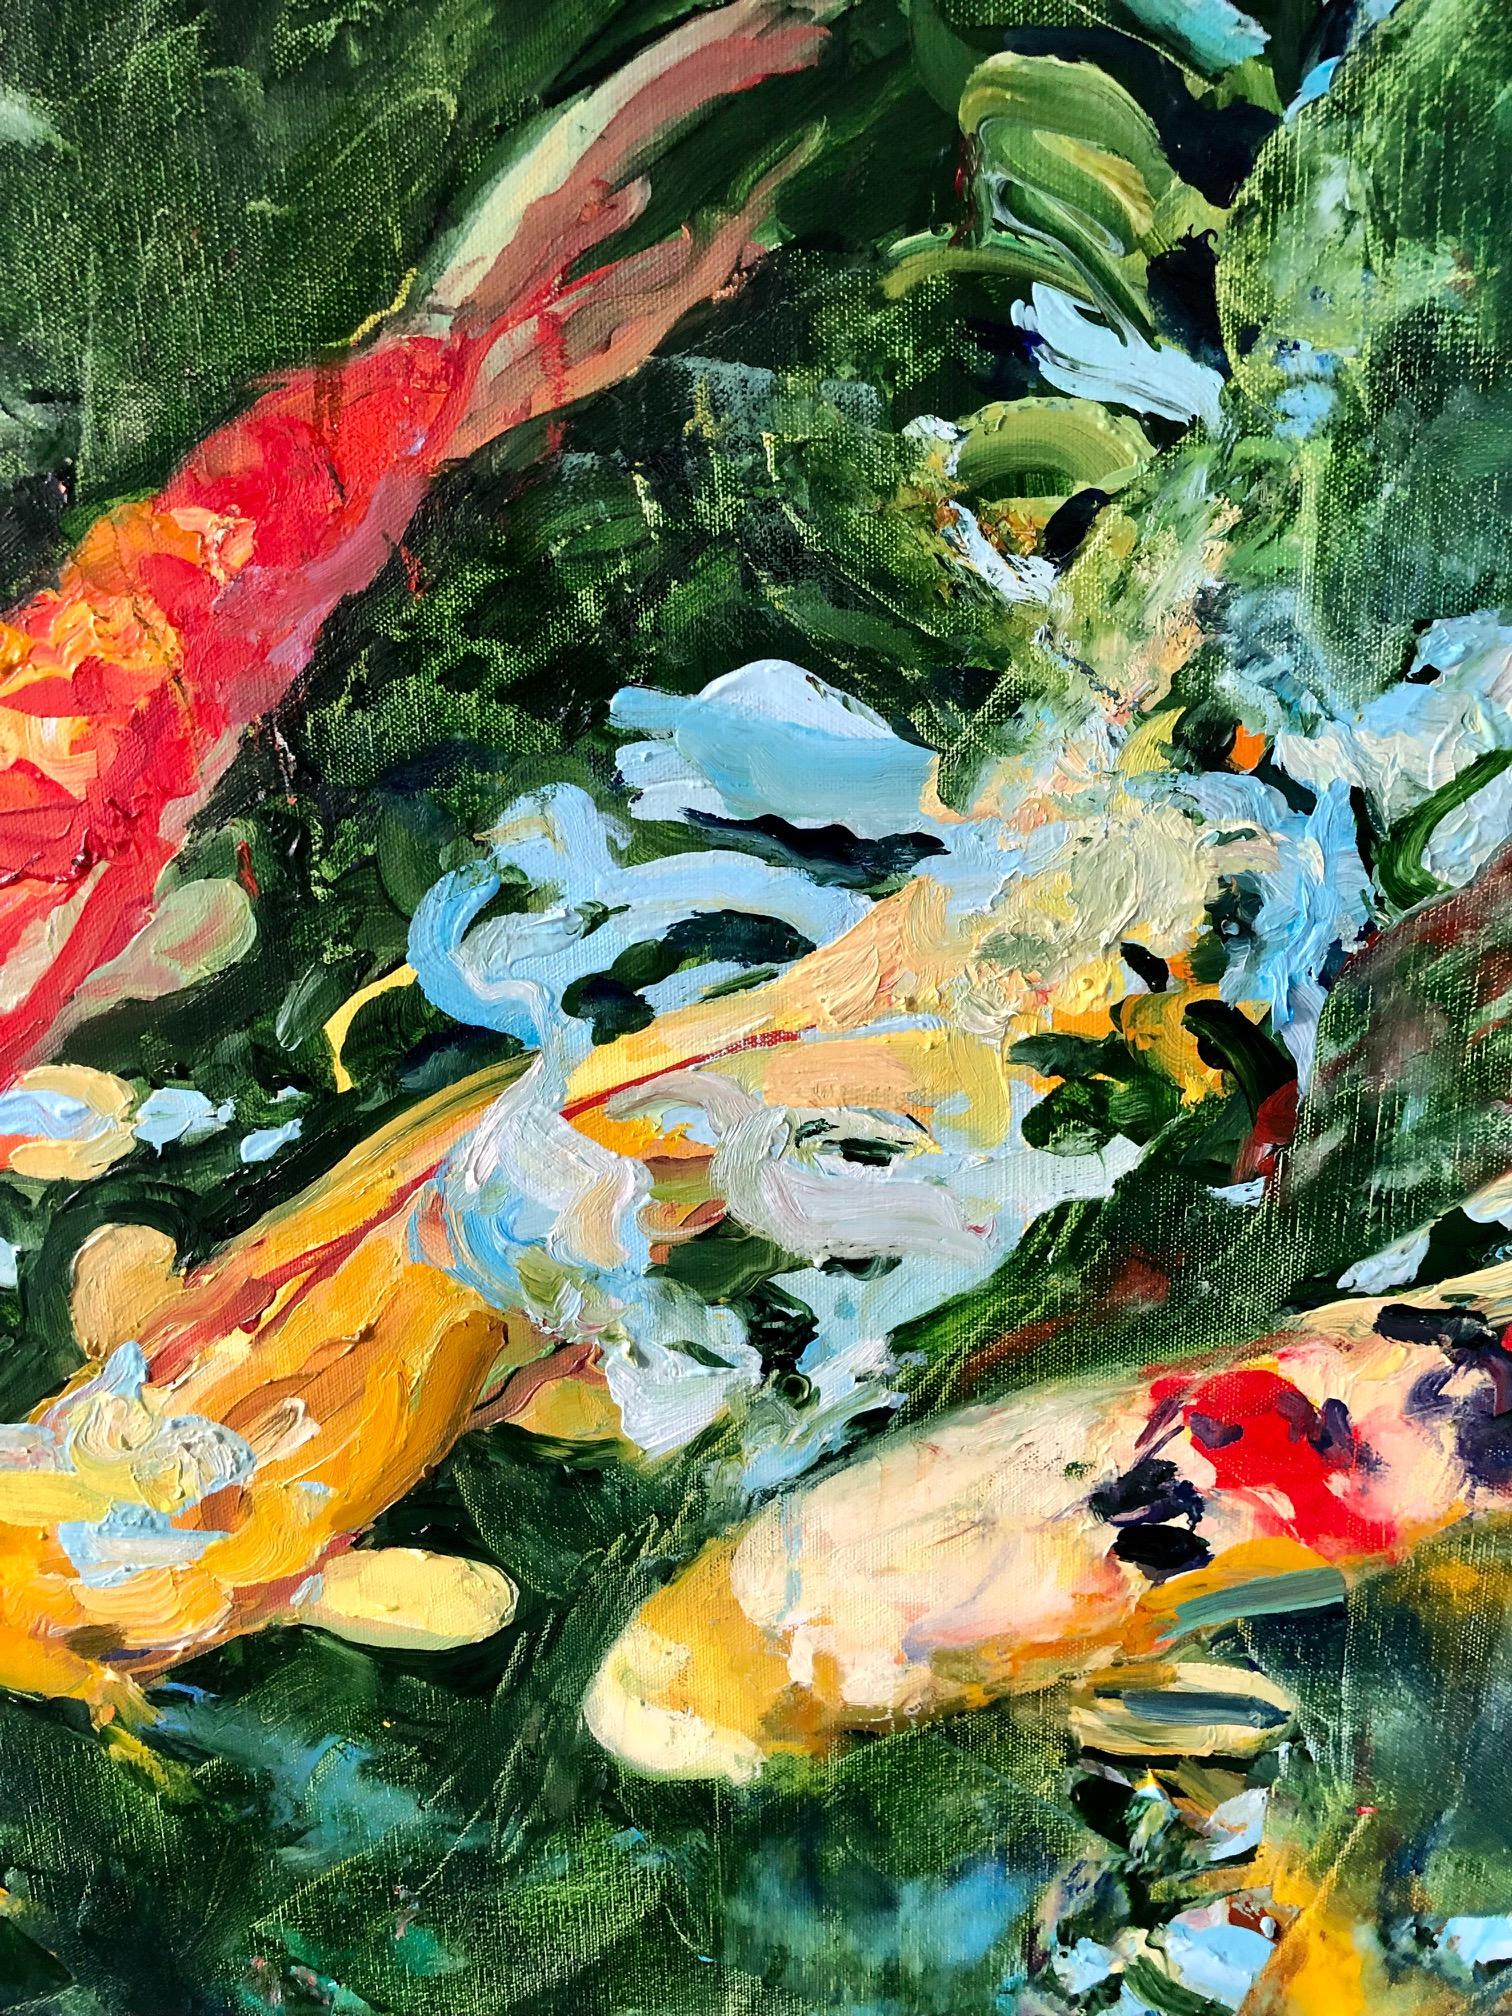 paintings of koi fish